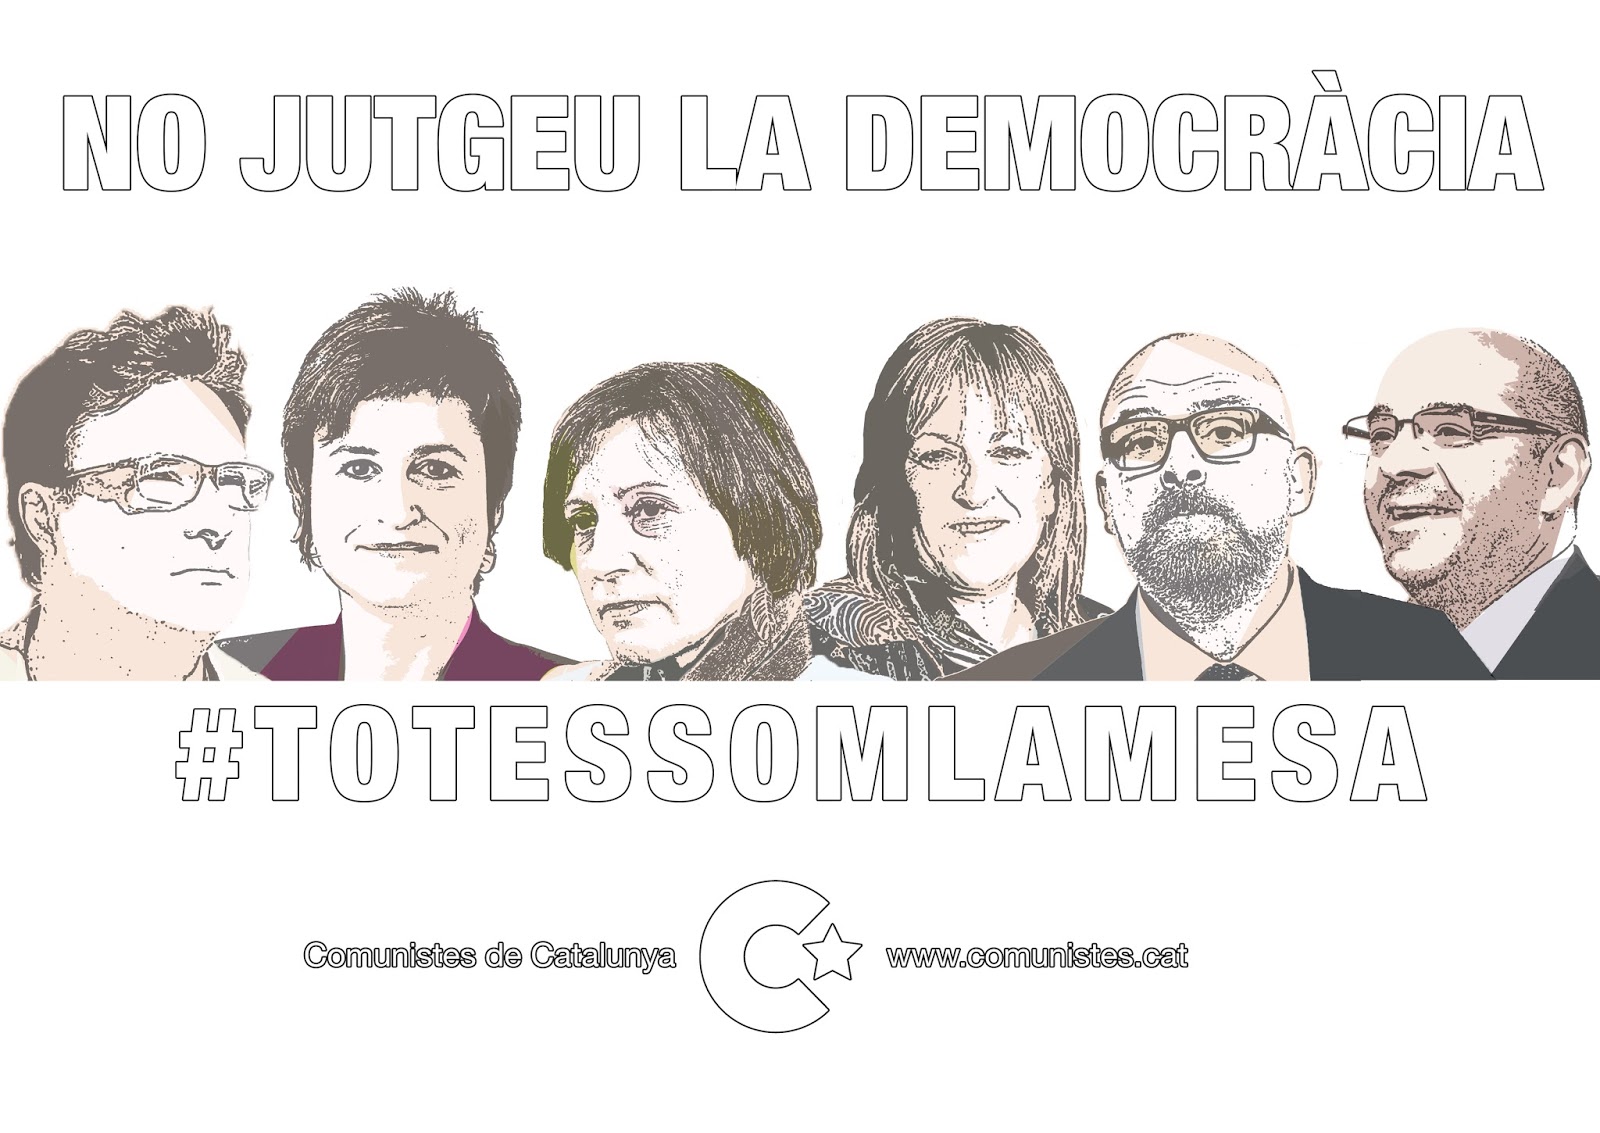 "Ne jugez pas la démocratie" (Communistes de Catalogne)